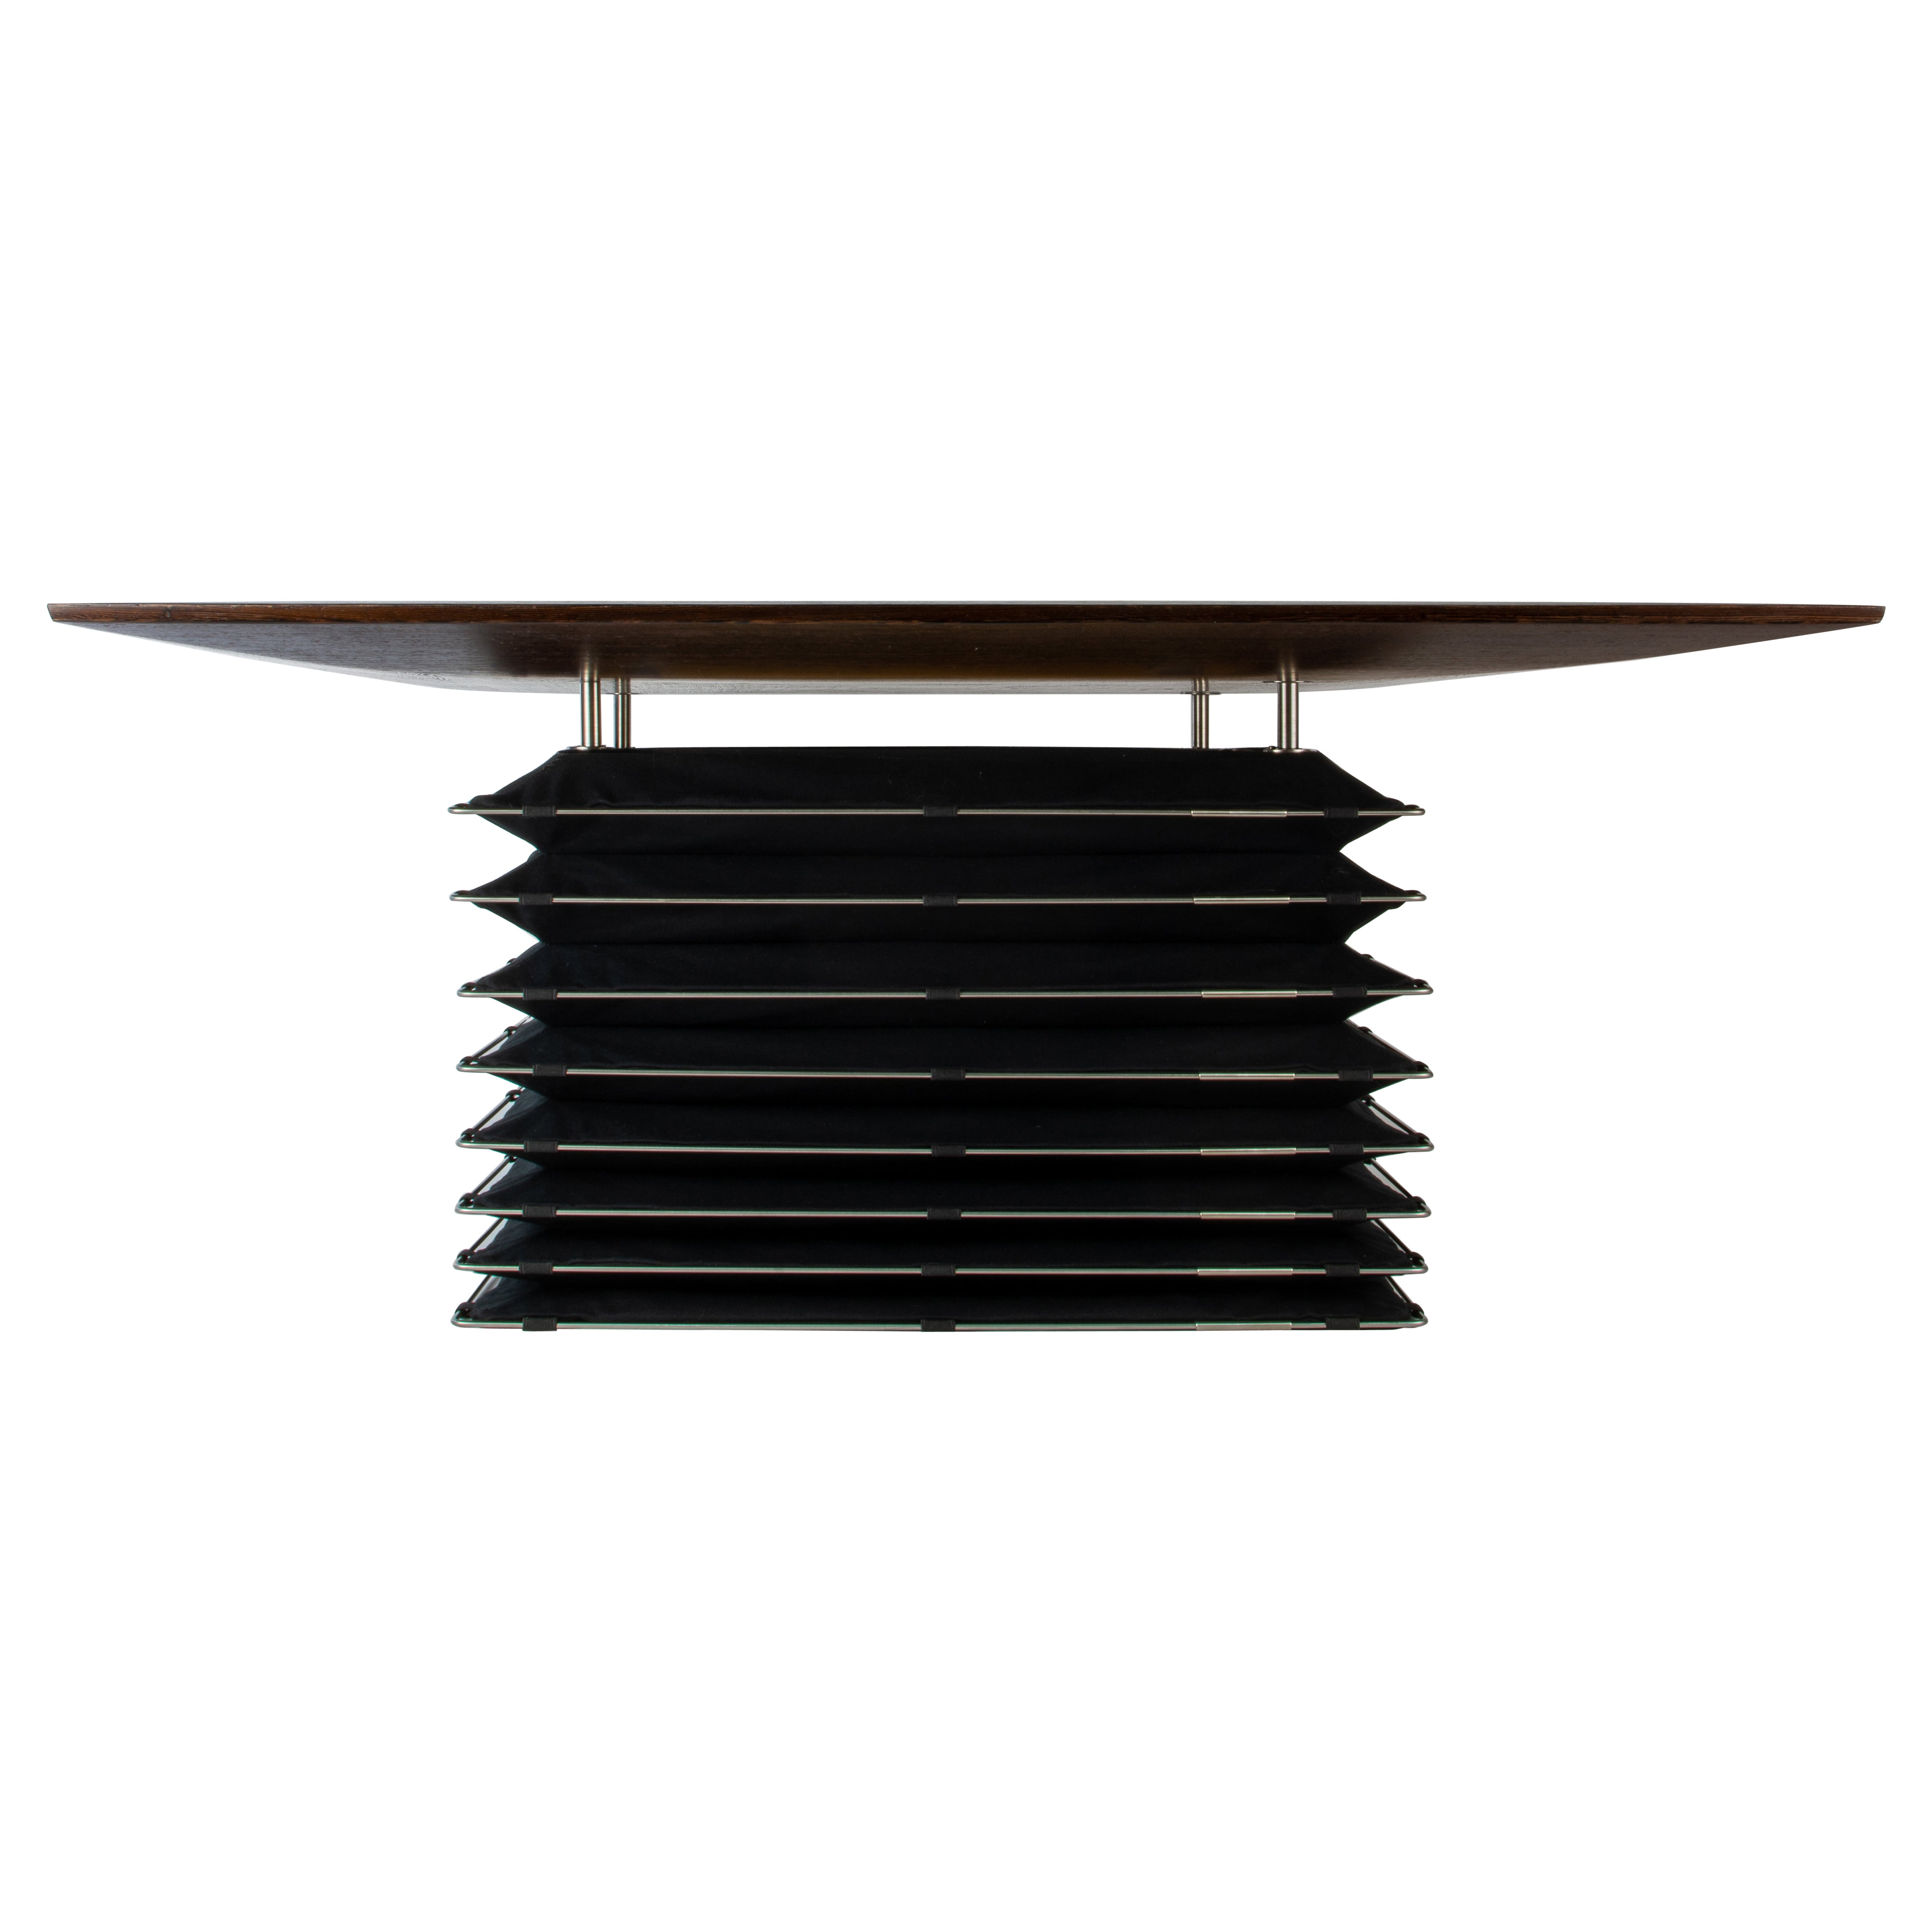 Table basse inspirée de l'architecture japonaise, fabriquée à la main en Pologne